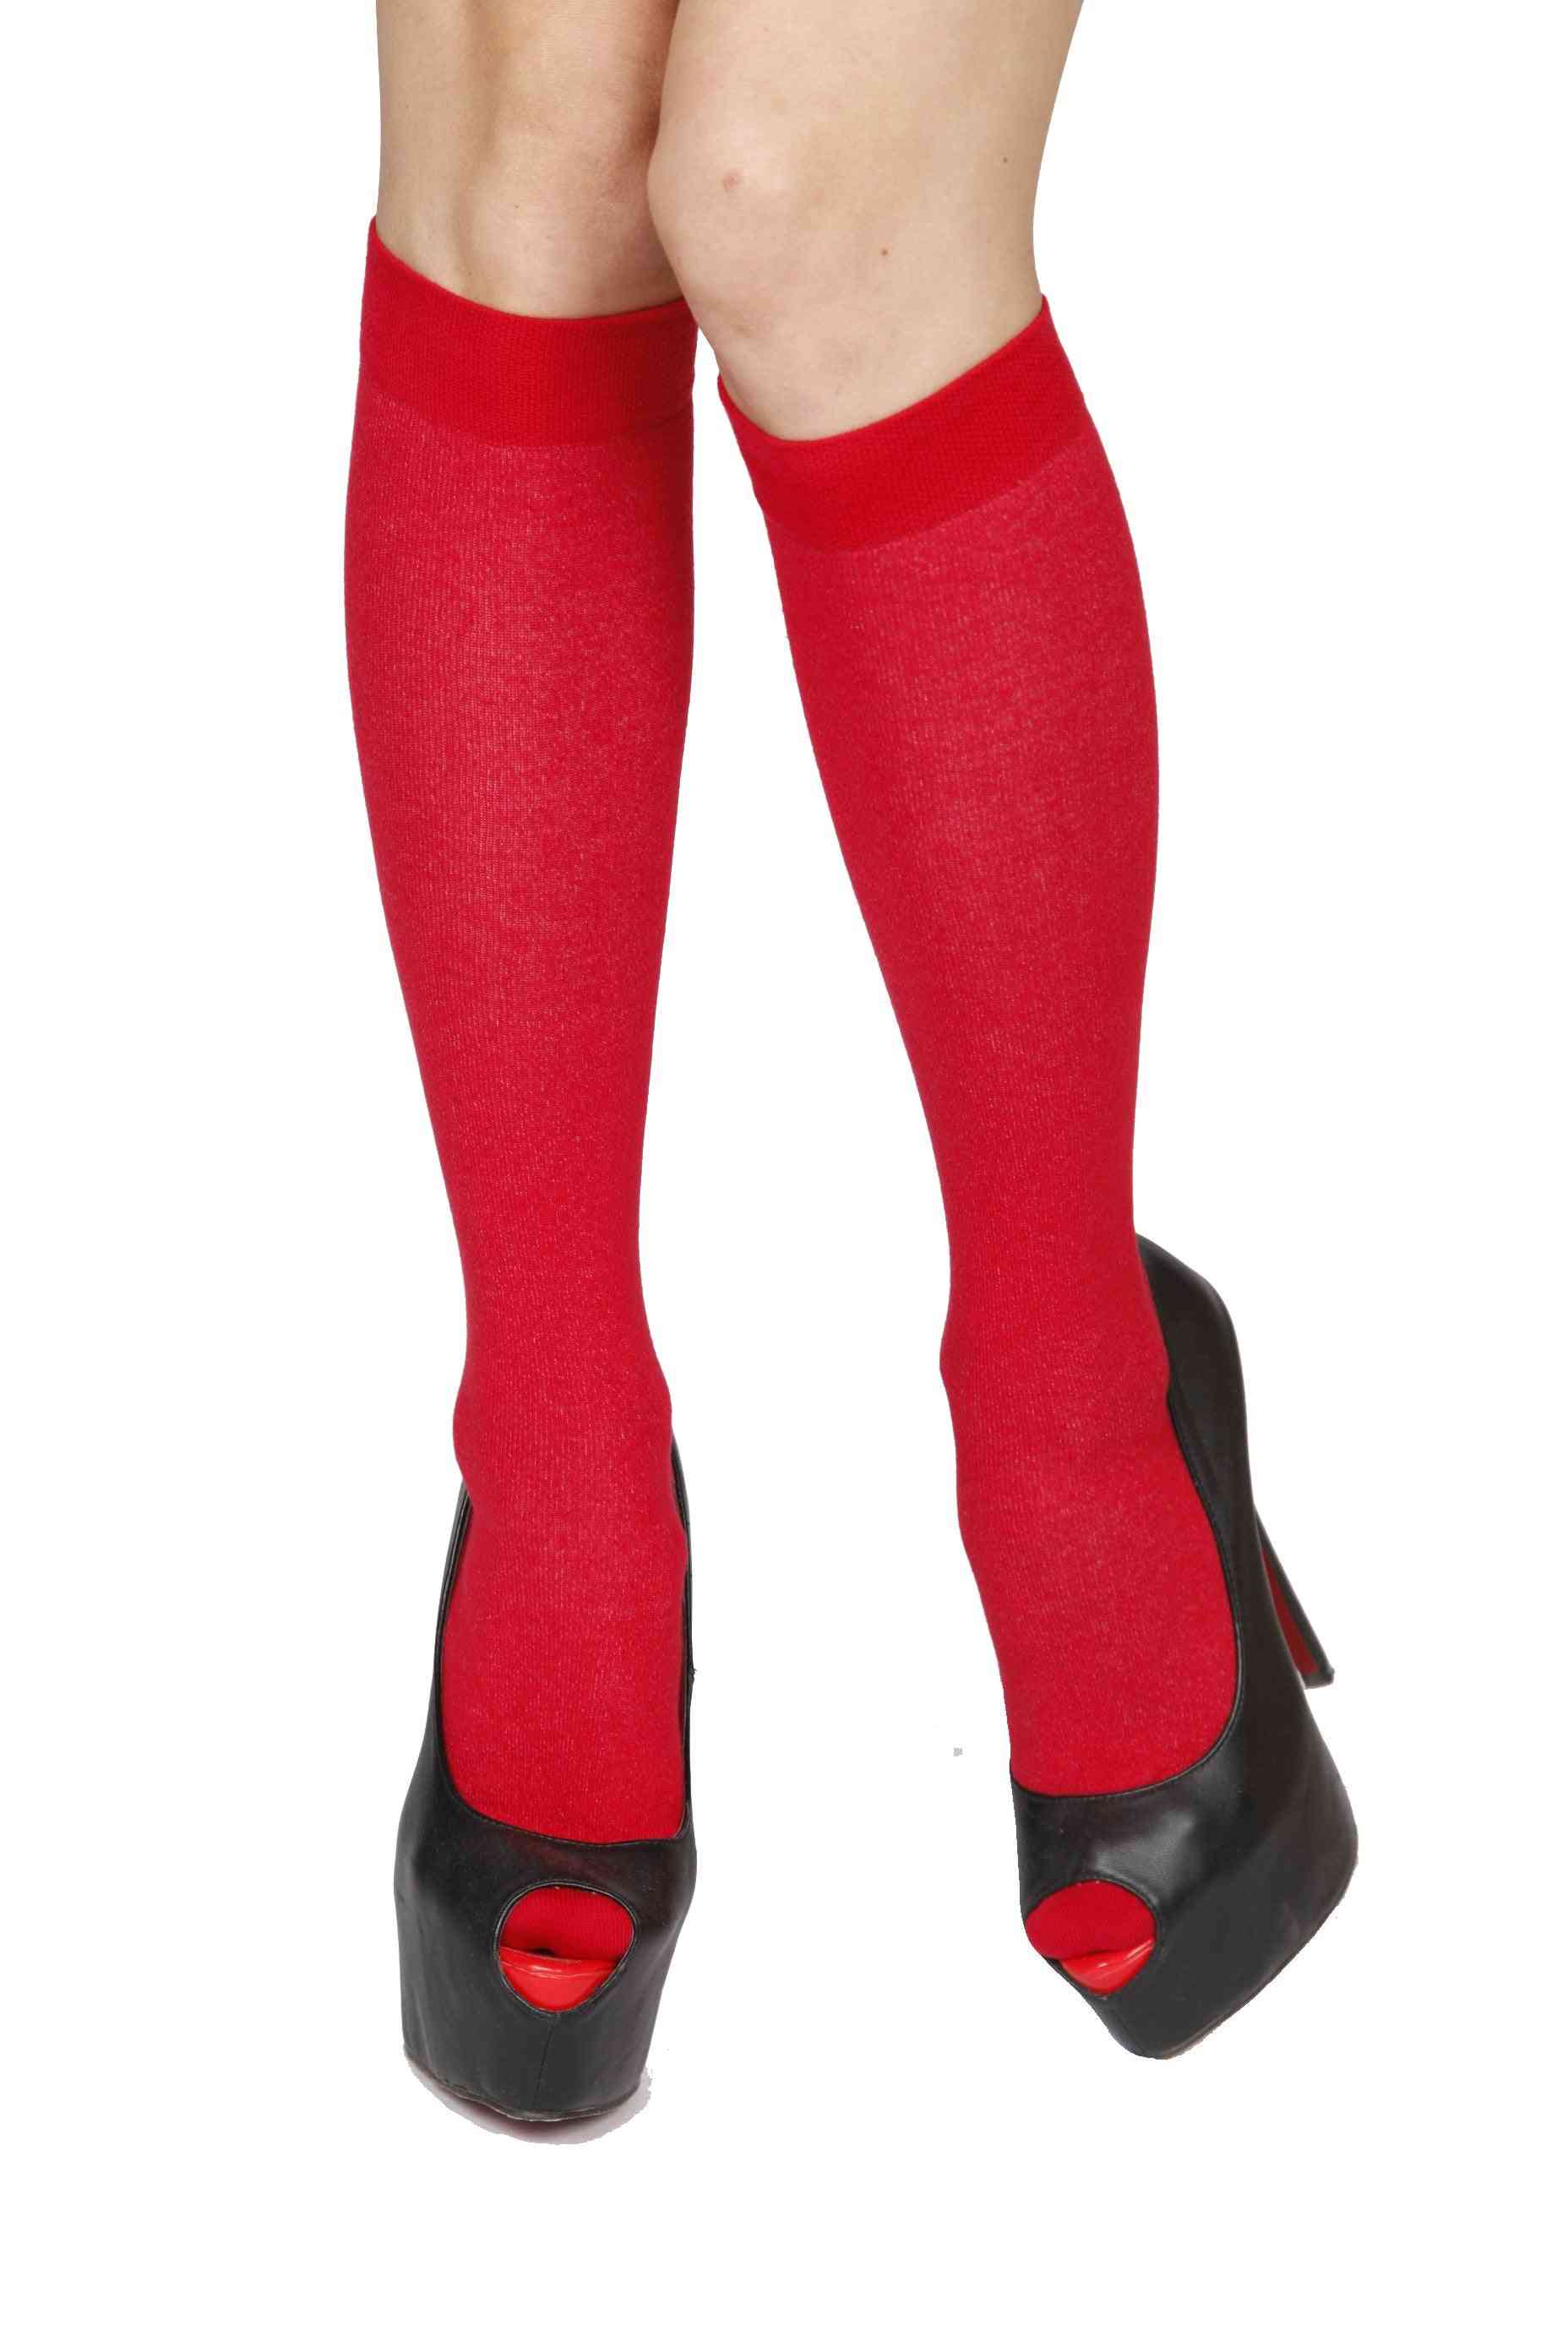 červené bavlněné podkolenky, sukně a kalhotové ponožky